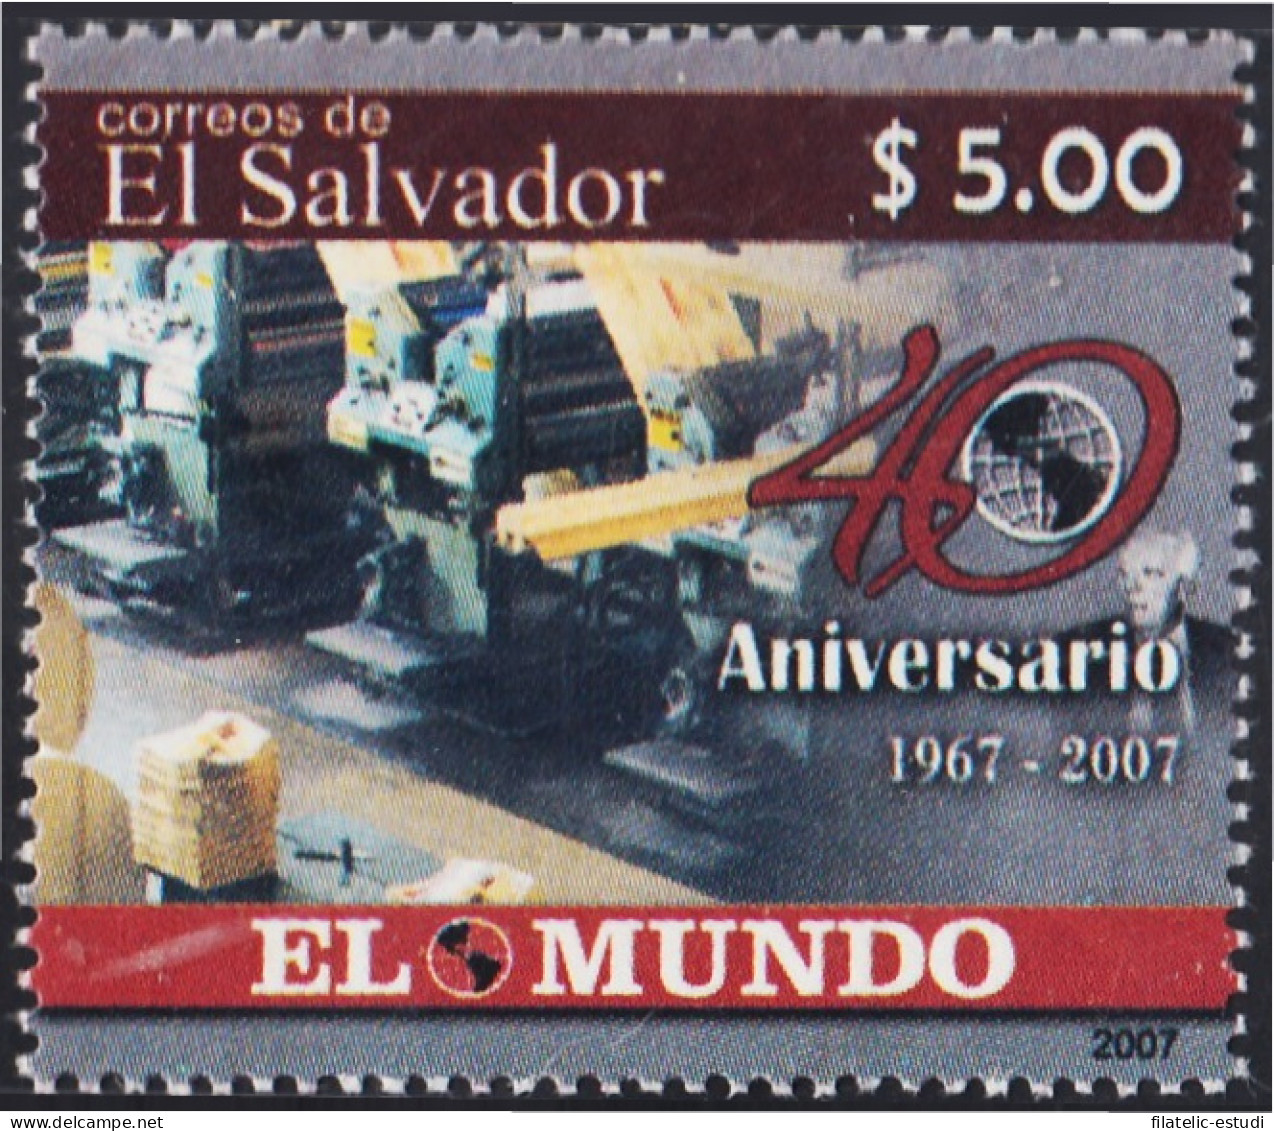 El Salvador 1694 2007 40 Años Del Diario El Mundo MNH - Salvador